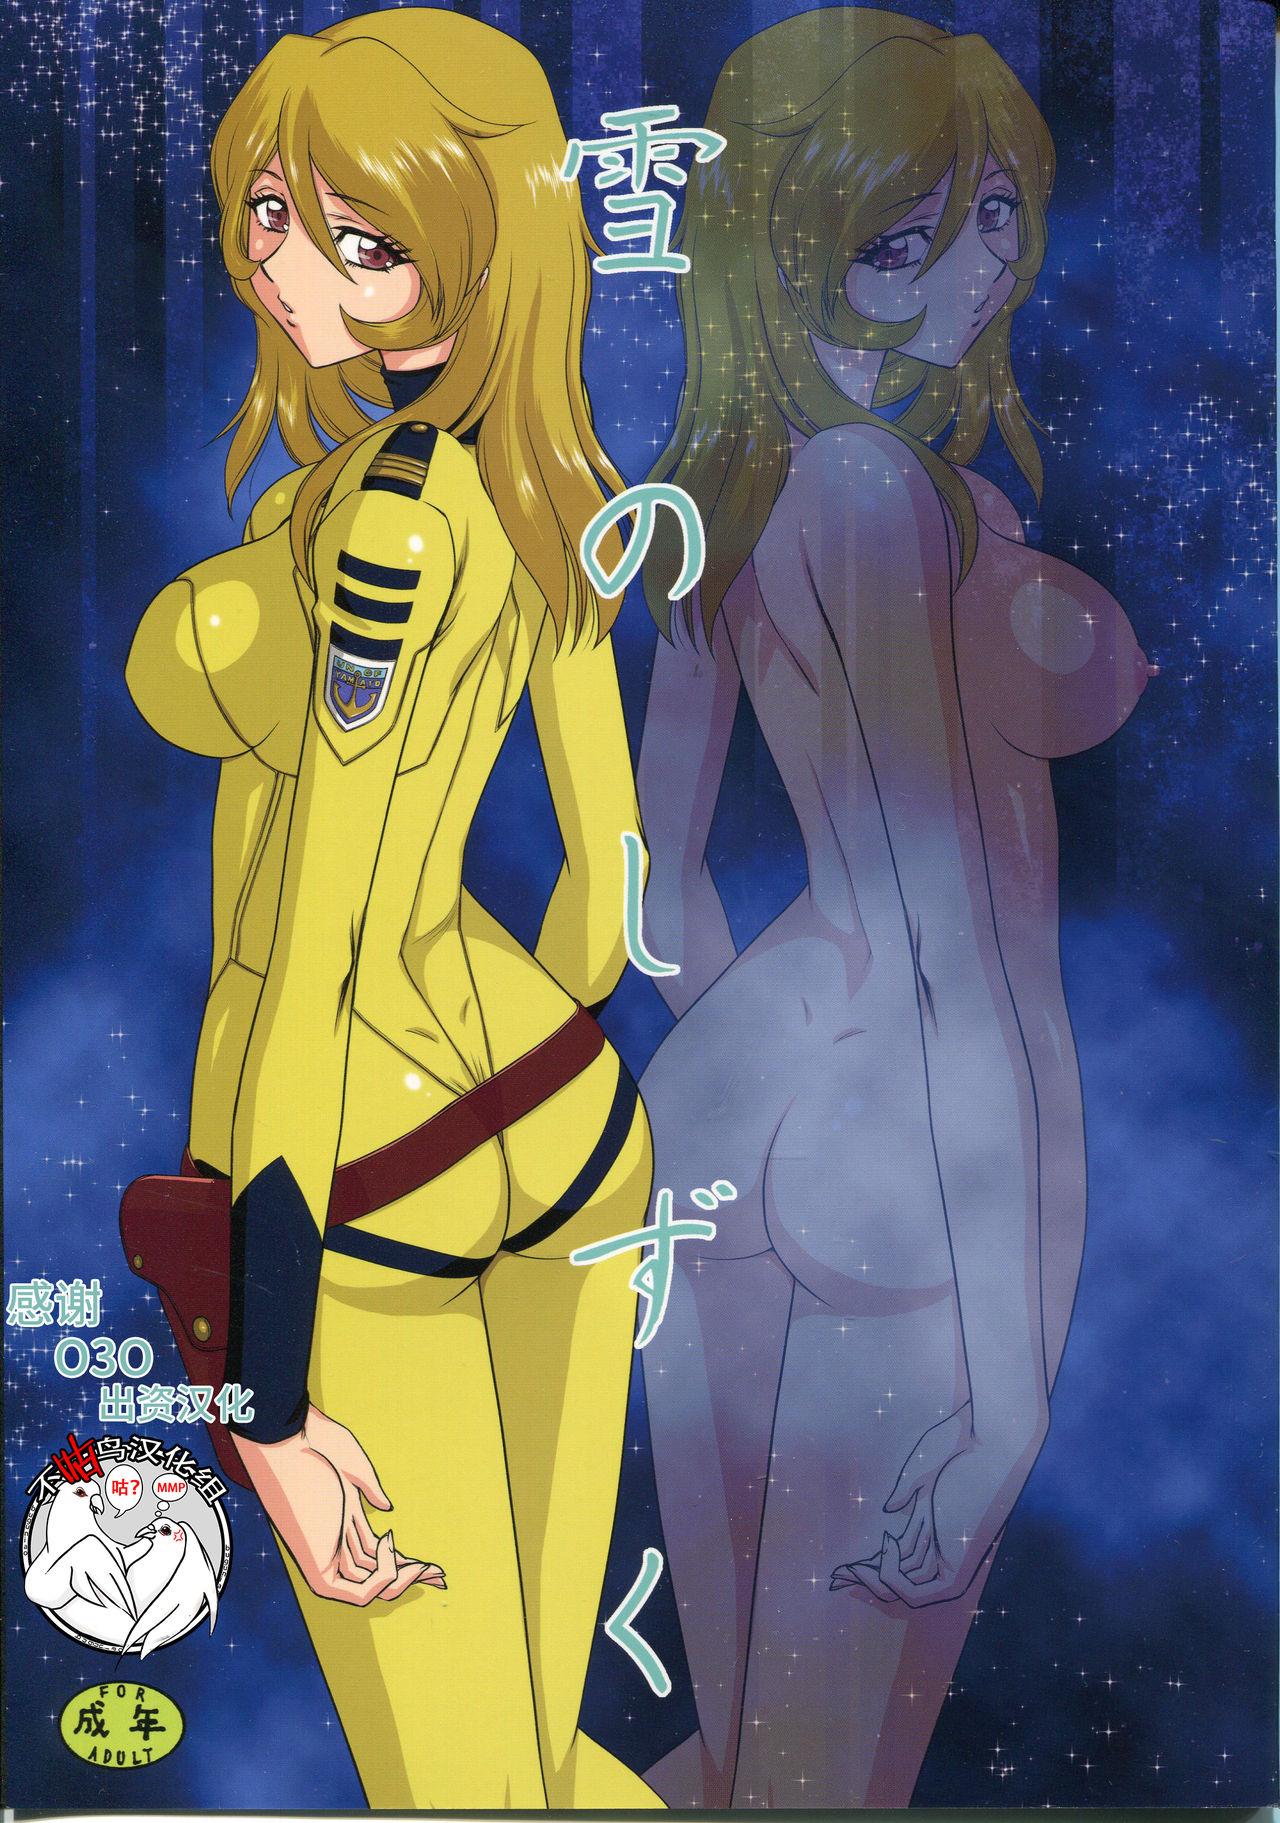 Sucking Dick Yuki no Shizuku - Space battleship yamato 2199 Gay Cut - Page 1